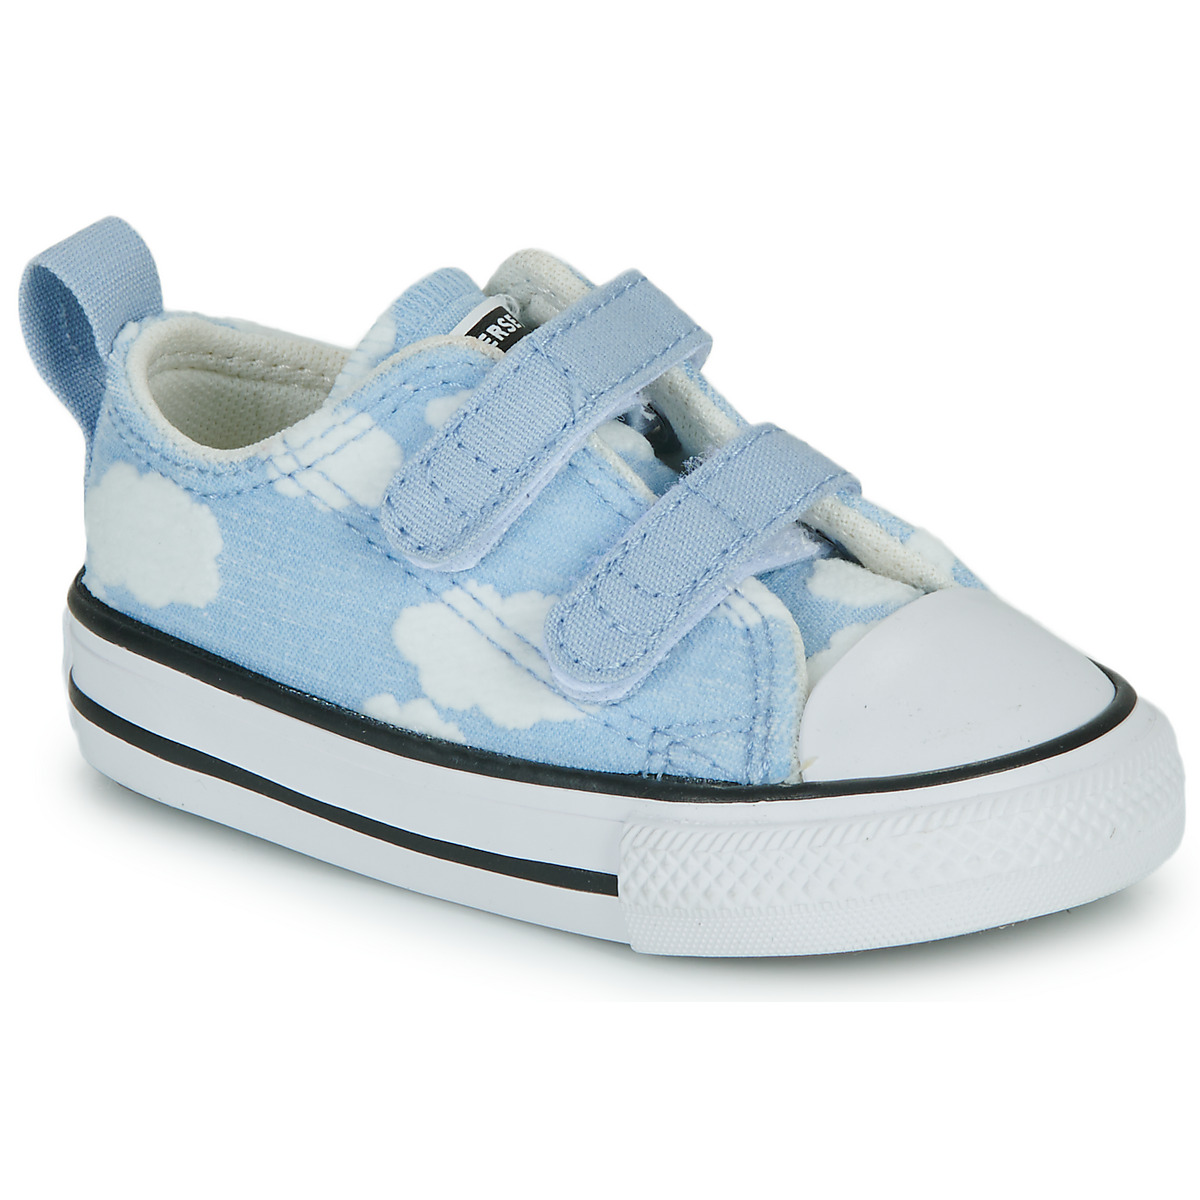 Sapatos Criança Sapatilhas Converse CHUCK TAYLOR ALL STAR 2V OX Azul / Branco